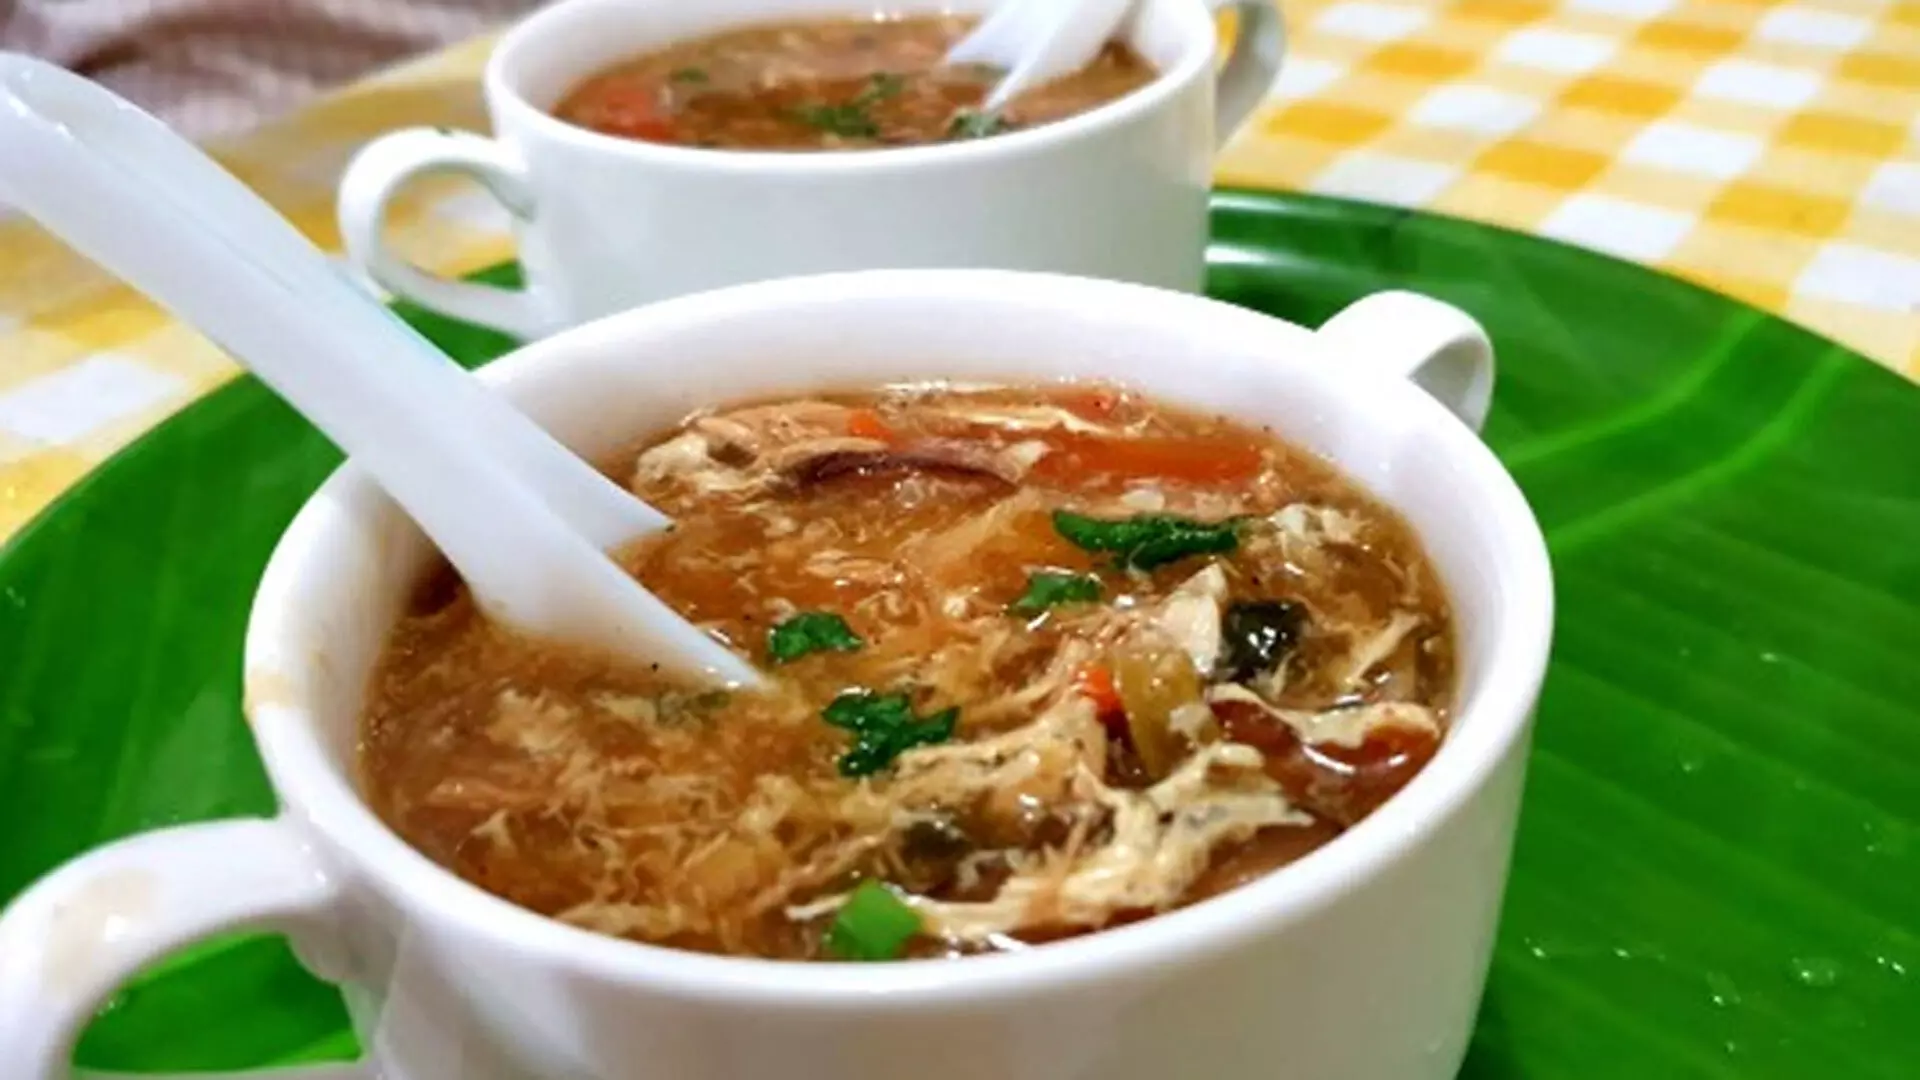 गर्मी के मौसम में चिकन हॉट एंड सॉर सूप का आनंद लें